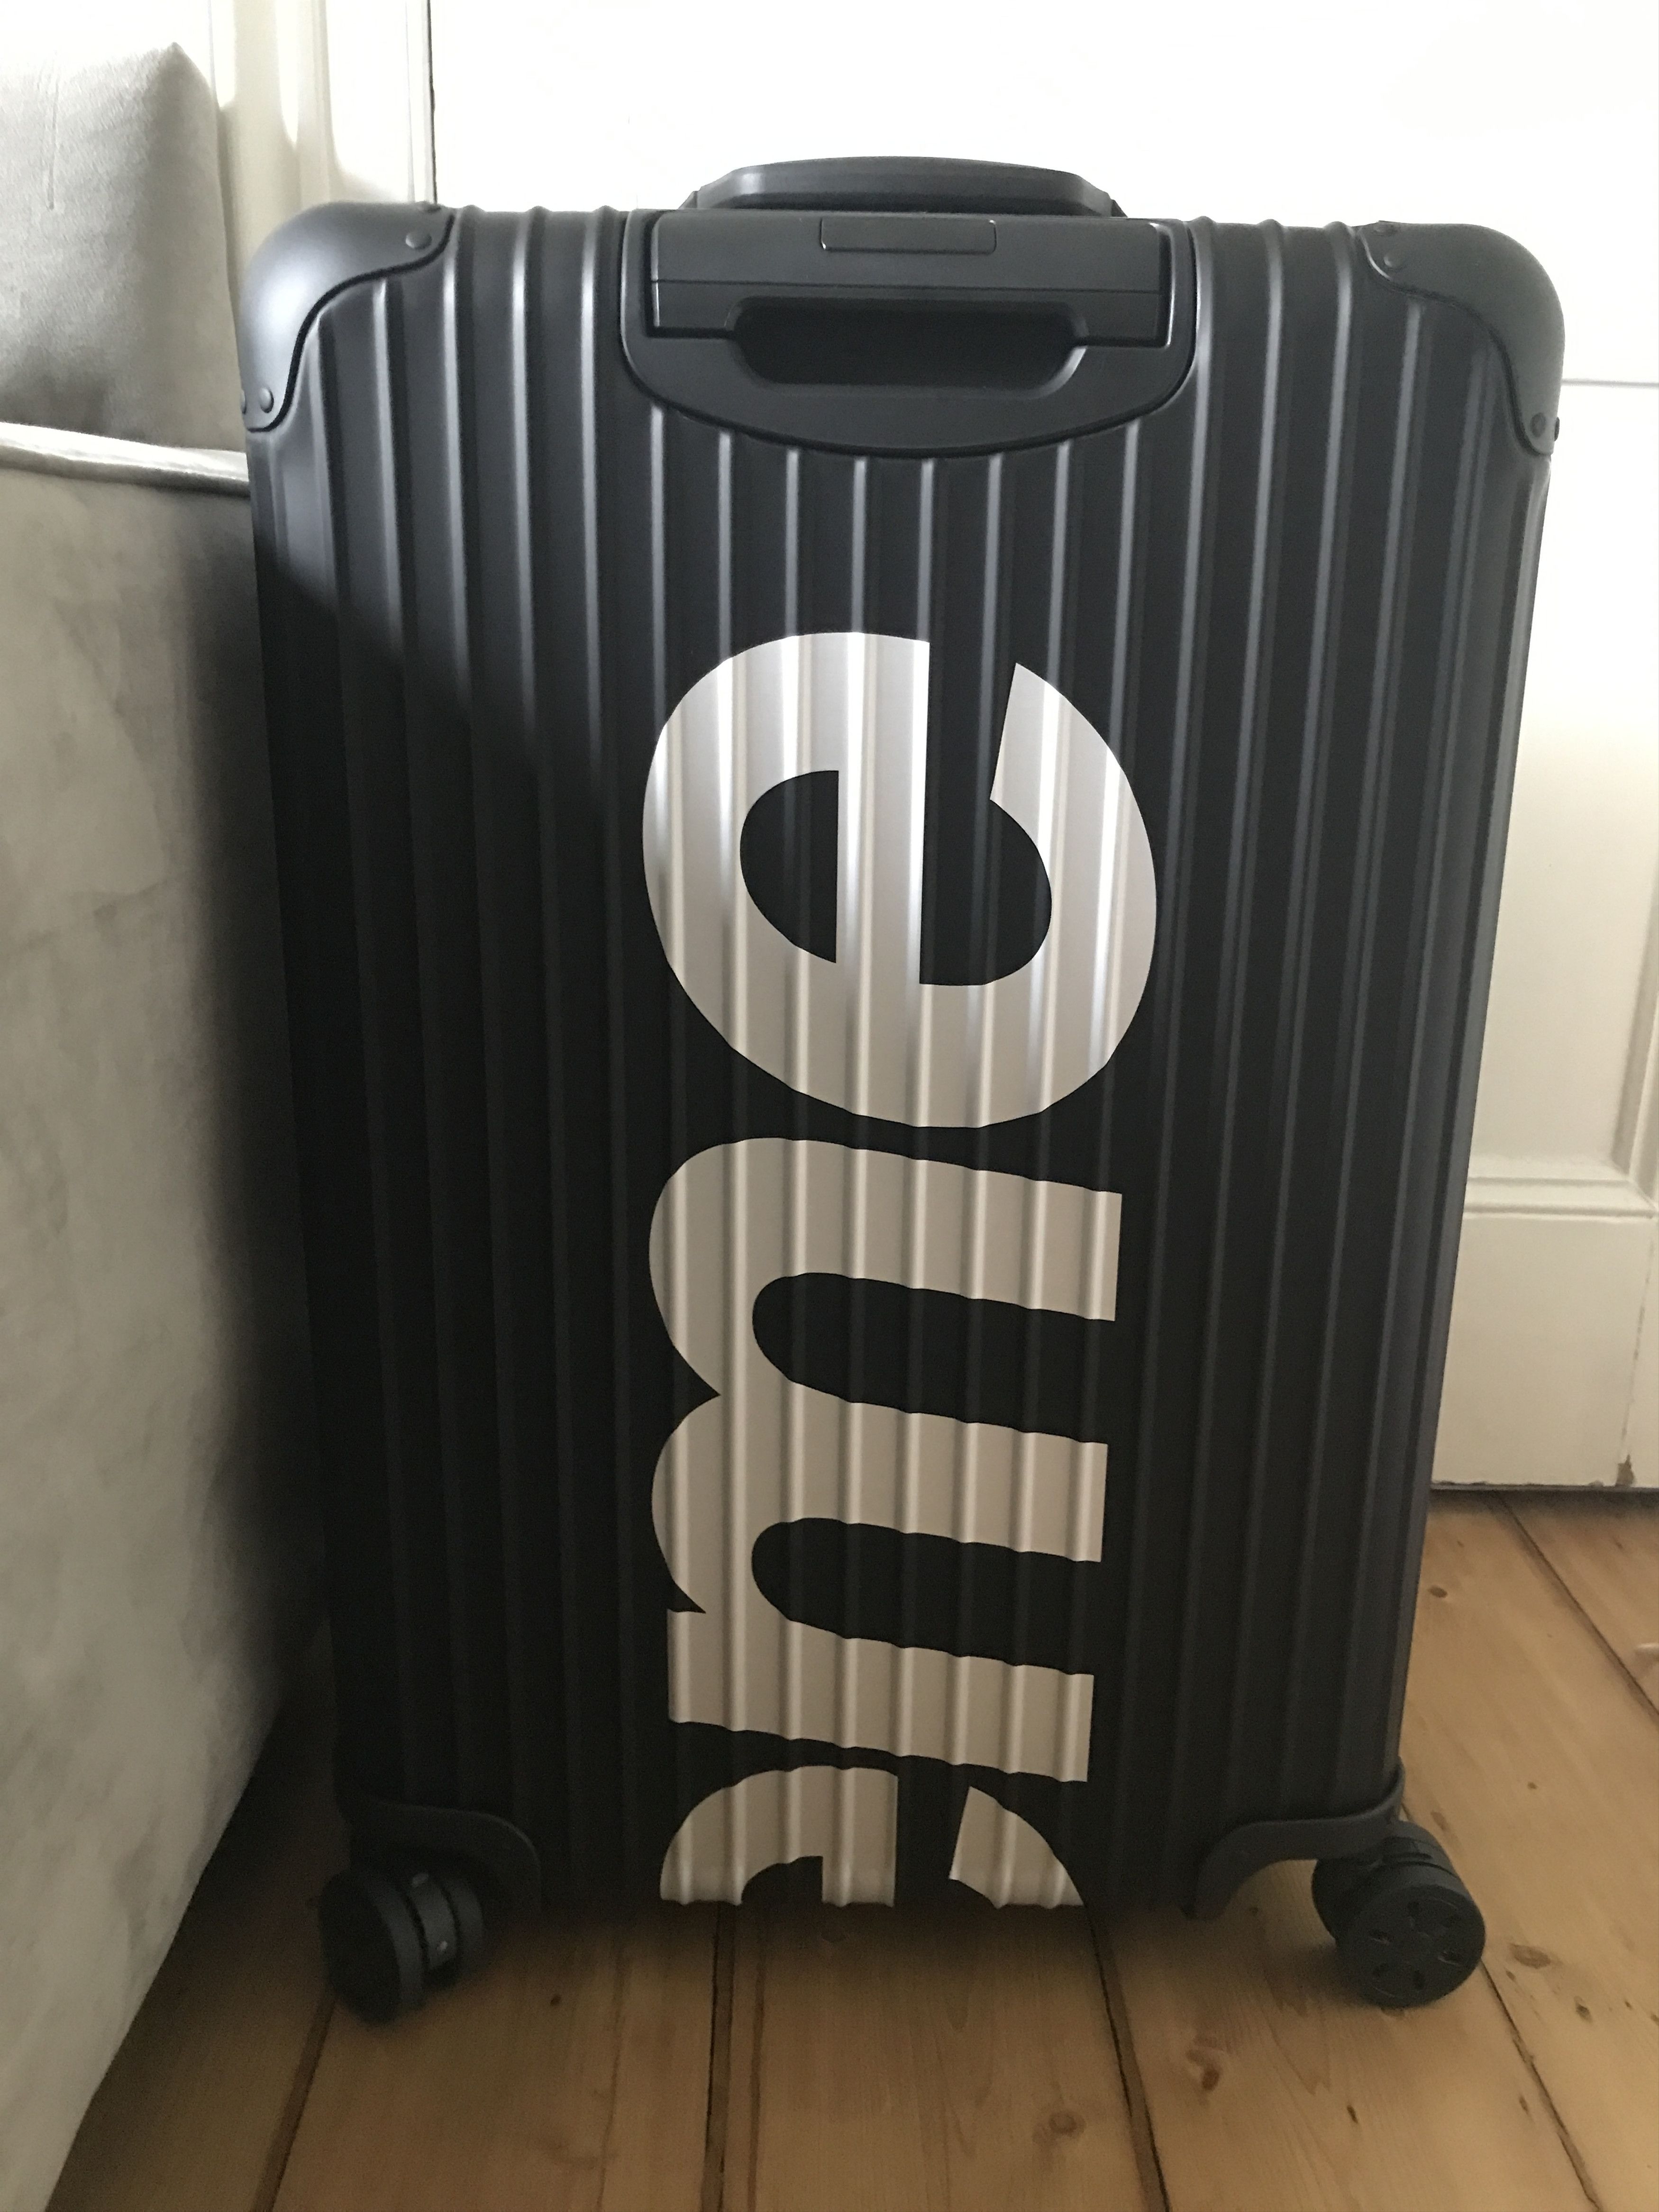 Supreme Supreme x Rimowa Suitcase 82L | Grailed